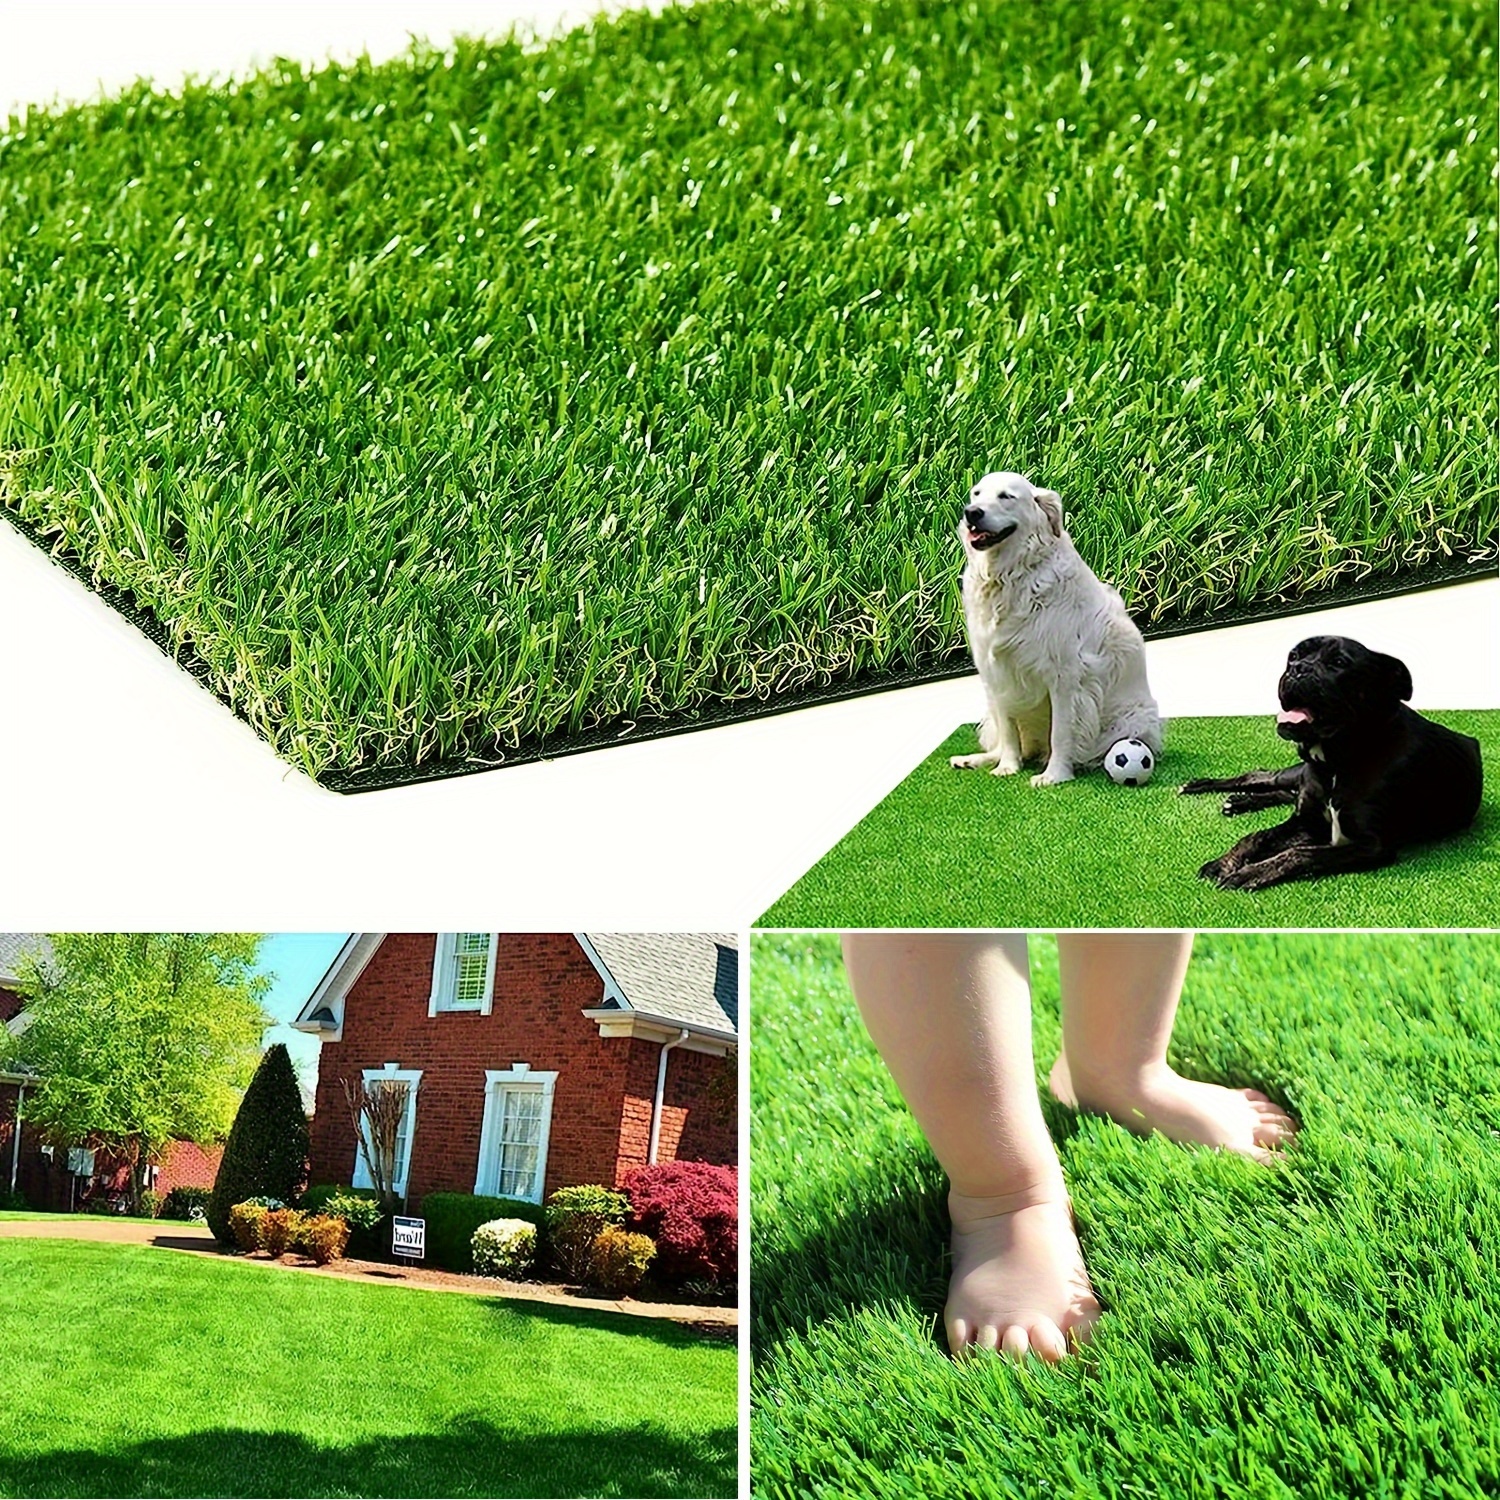 Artificial Grass Turf Moss Mat Faux Grass Panels Large Lawn - Temu